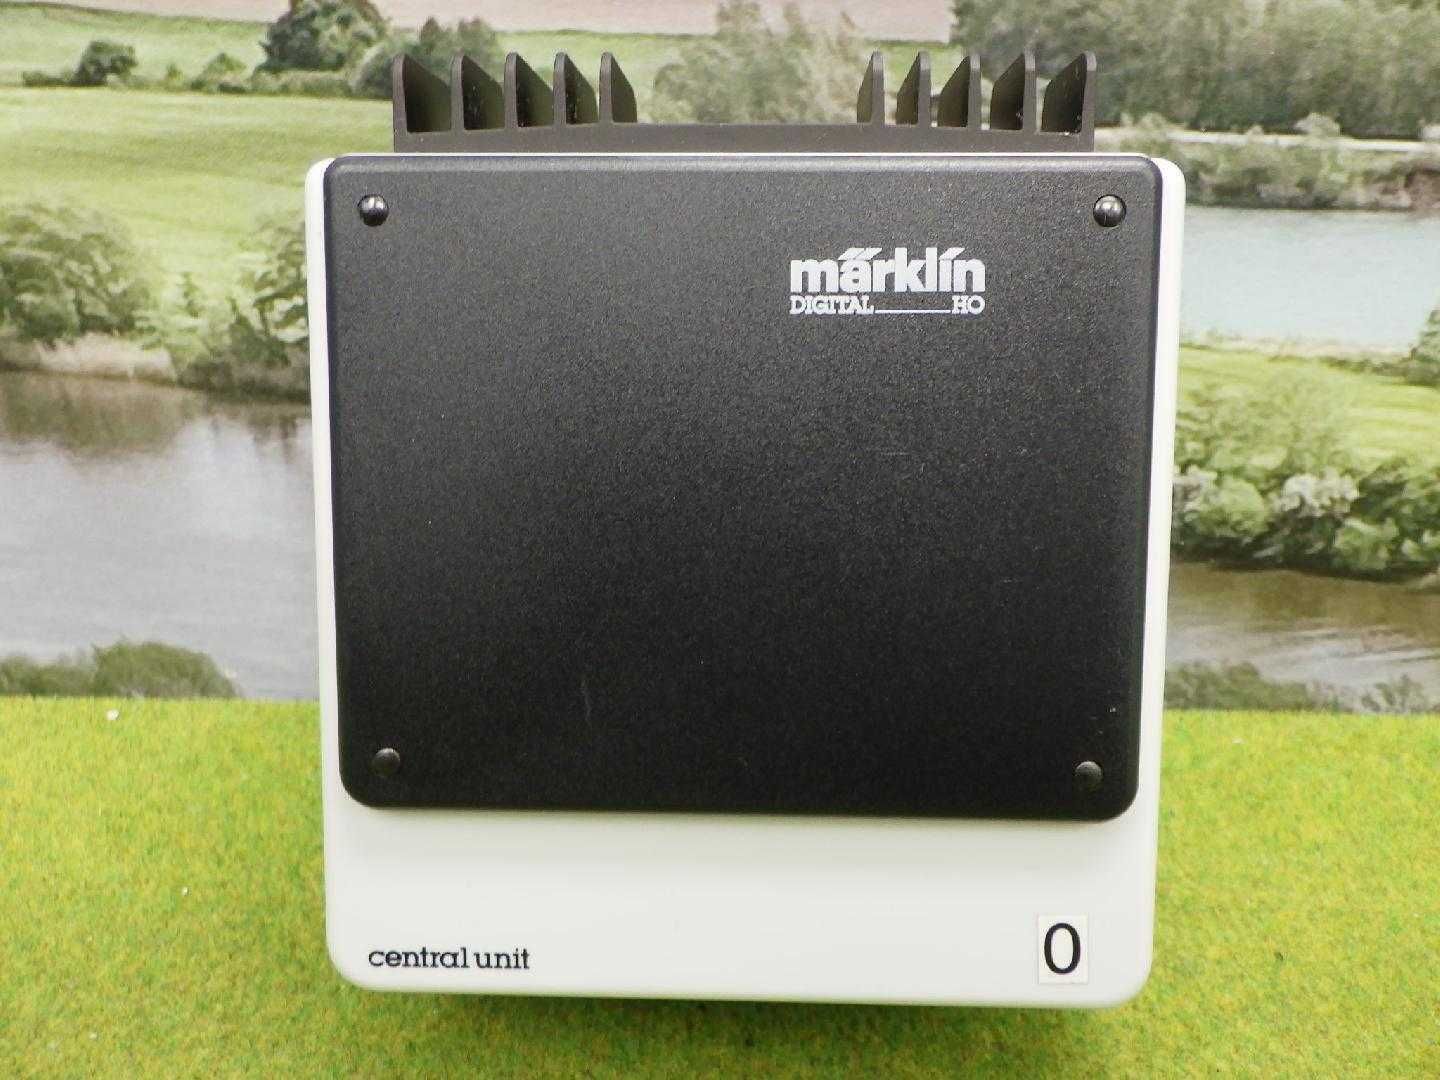 MiniClubMarklin  - Marklin 6040 Sistema de controlo digital